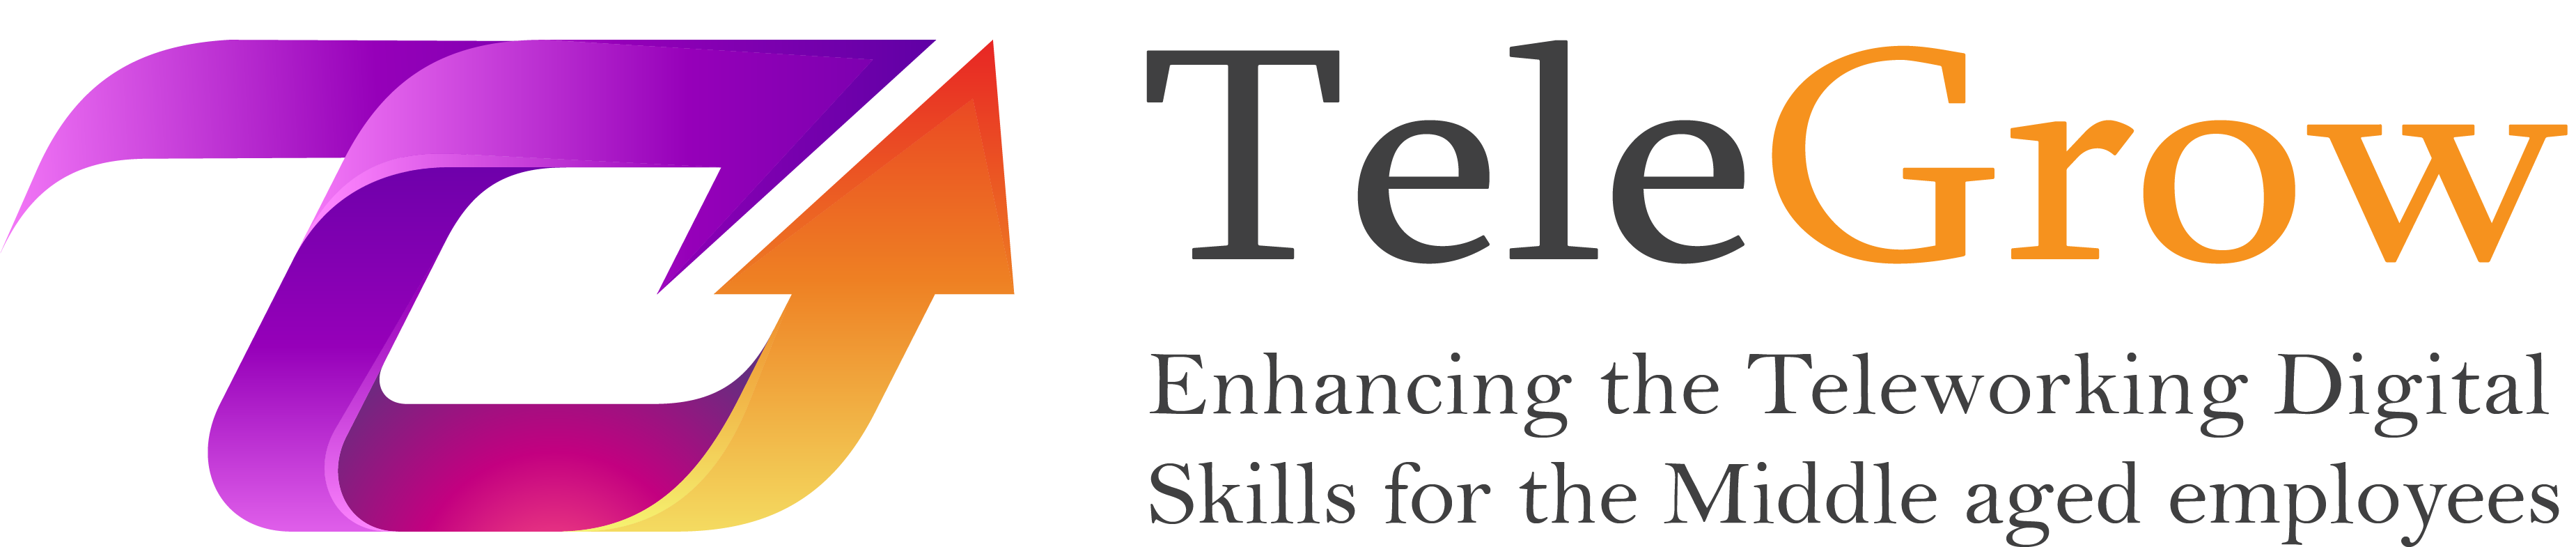 TELEGROW: Mejora de las competencias digitales del teletrabajo para los empleados de mediana edad